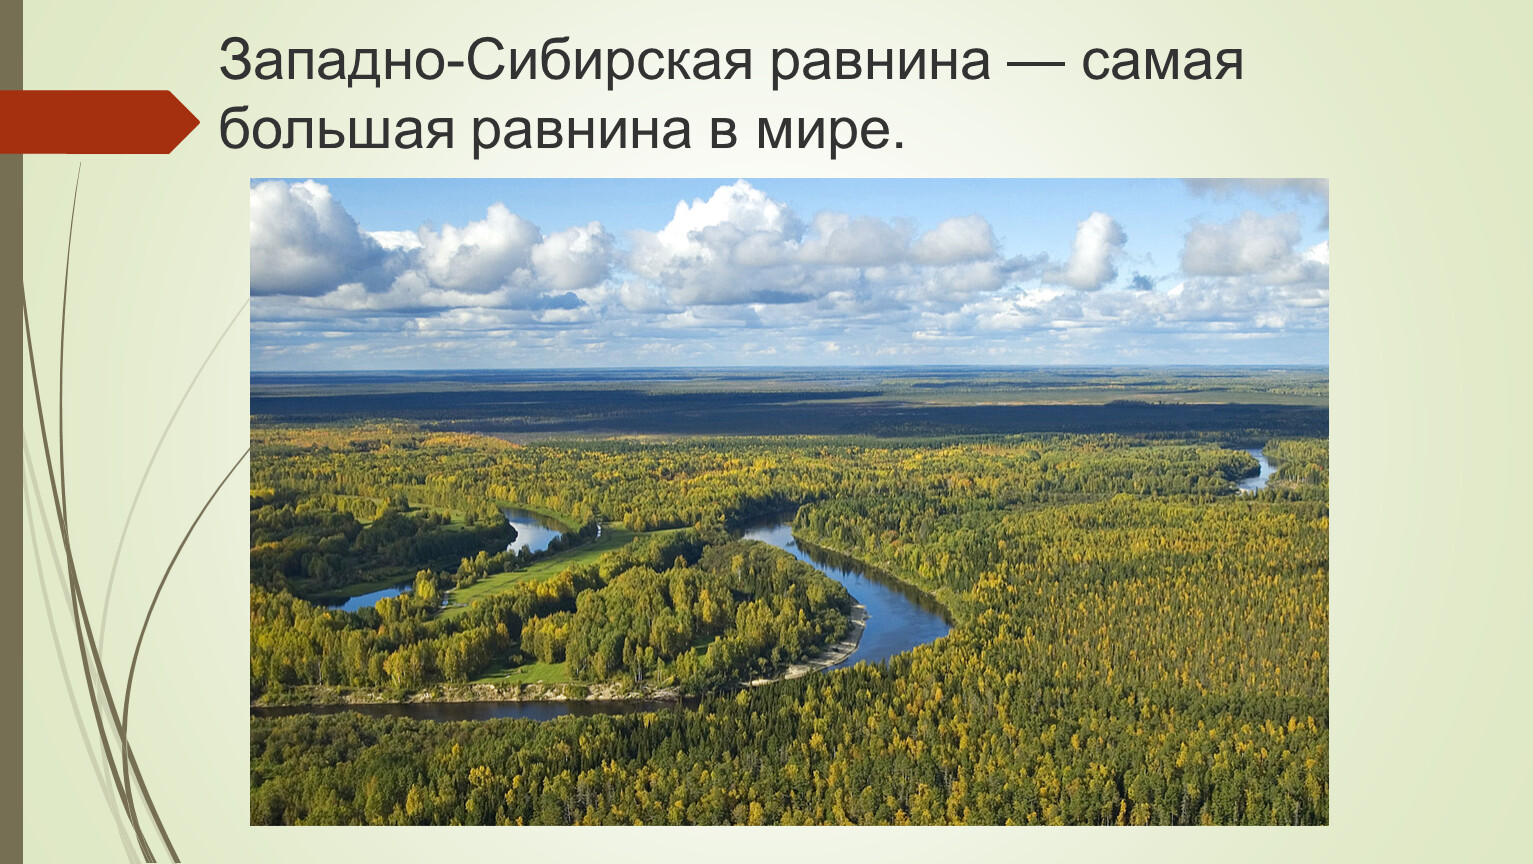 Большие реки западно сибирской равнины. Западно-Сибирская низменность. Замадносибирская низменность. Западно Сибирская низменность или равнина. Западно Сибирская равнина равнина.